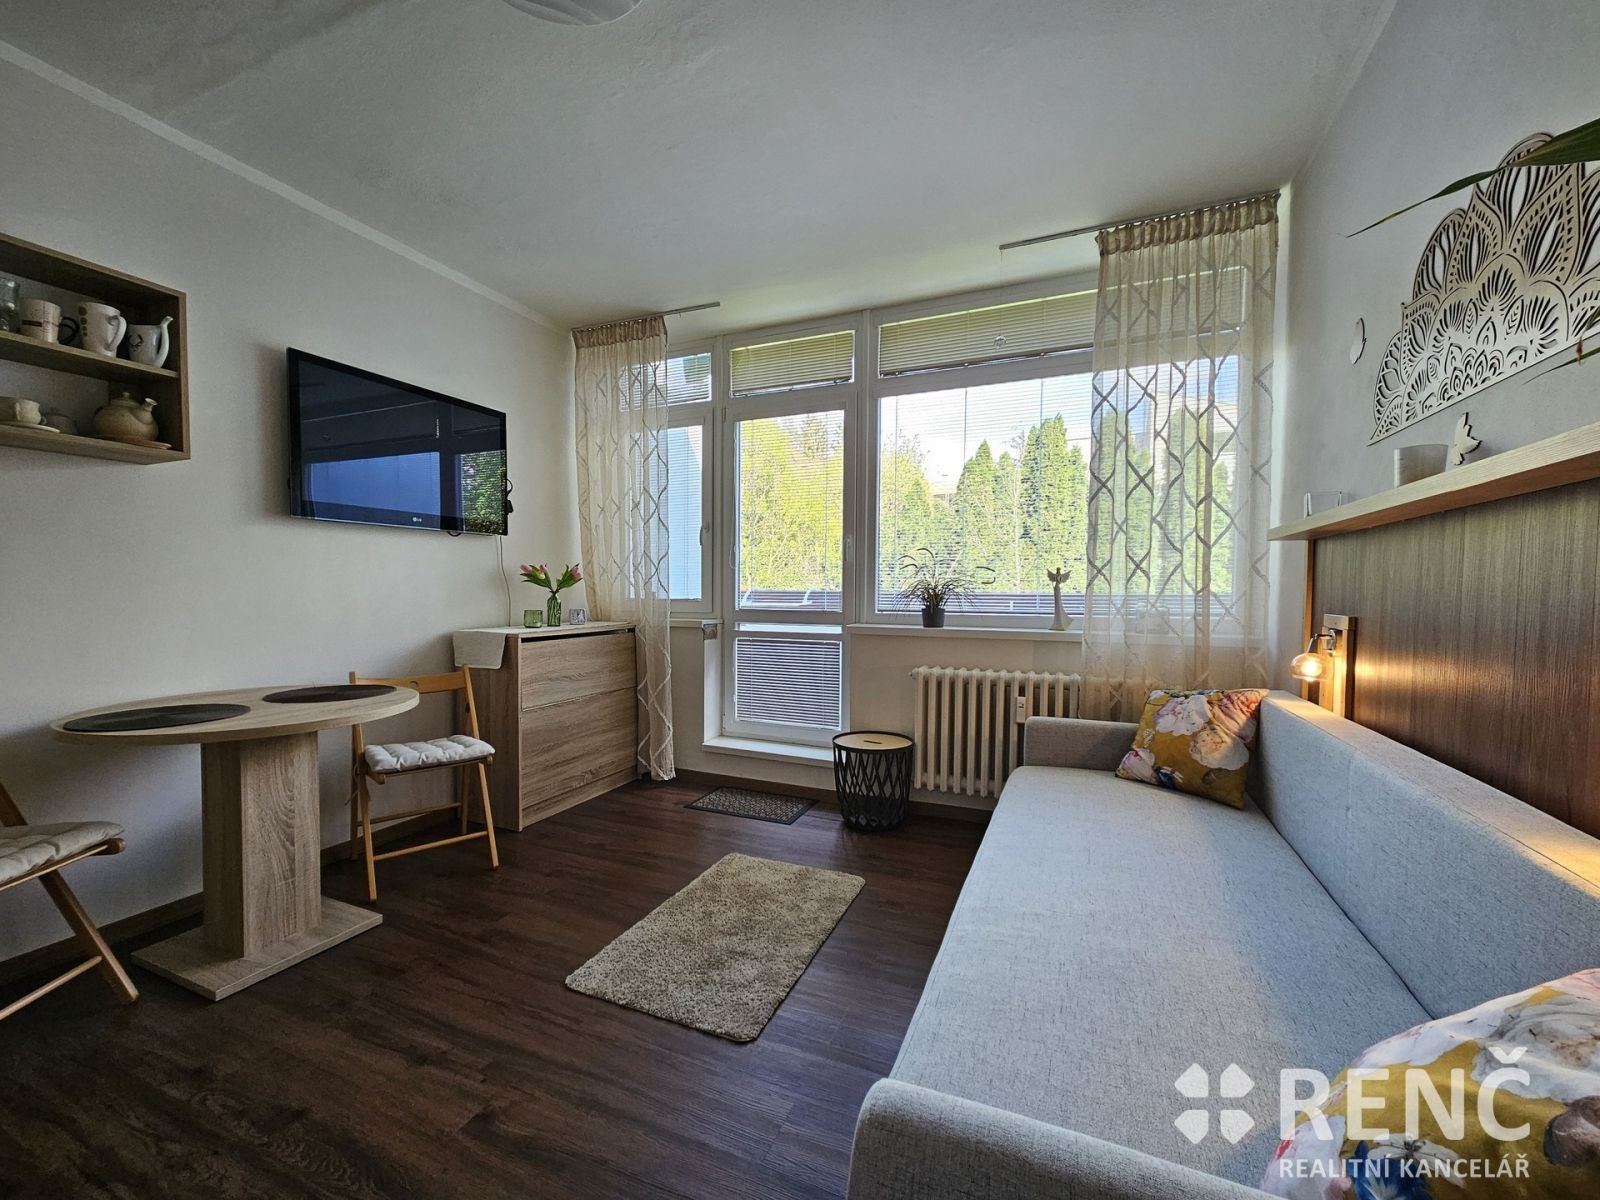 Prodej zrekonstruovaného bytu o velikosti 1+kk na ulici Leoše Janáčka mezi lázeňským parkem a přehra, obrázek č. 2